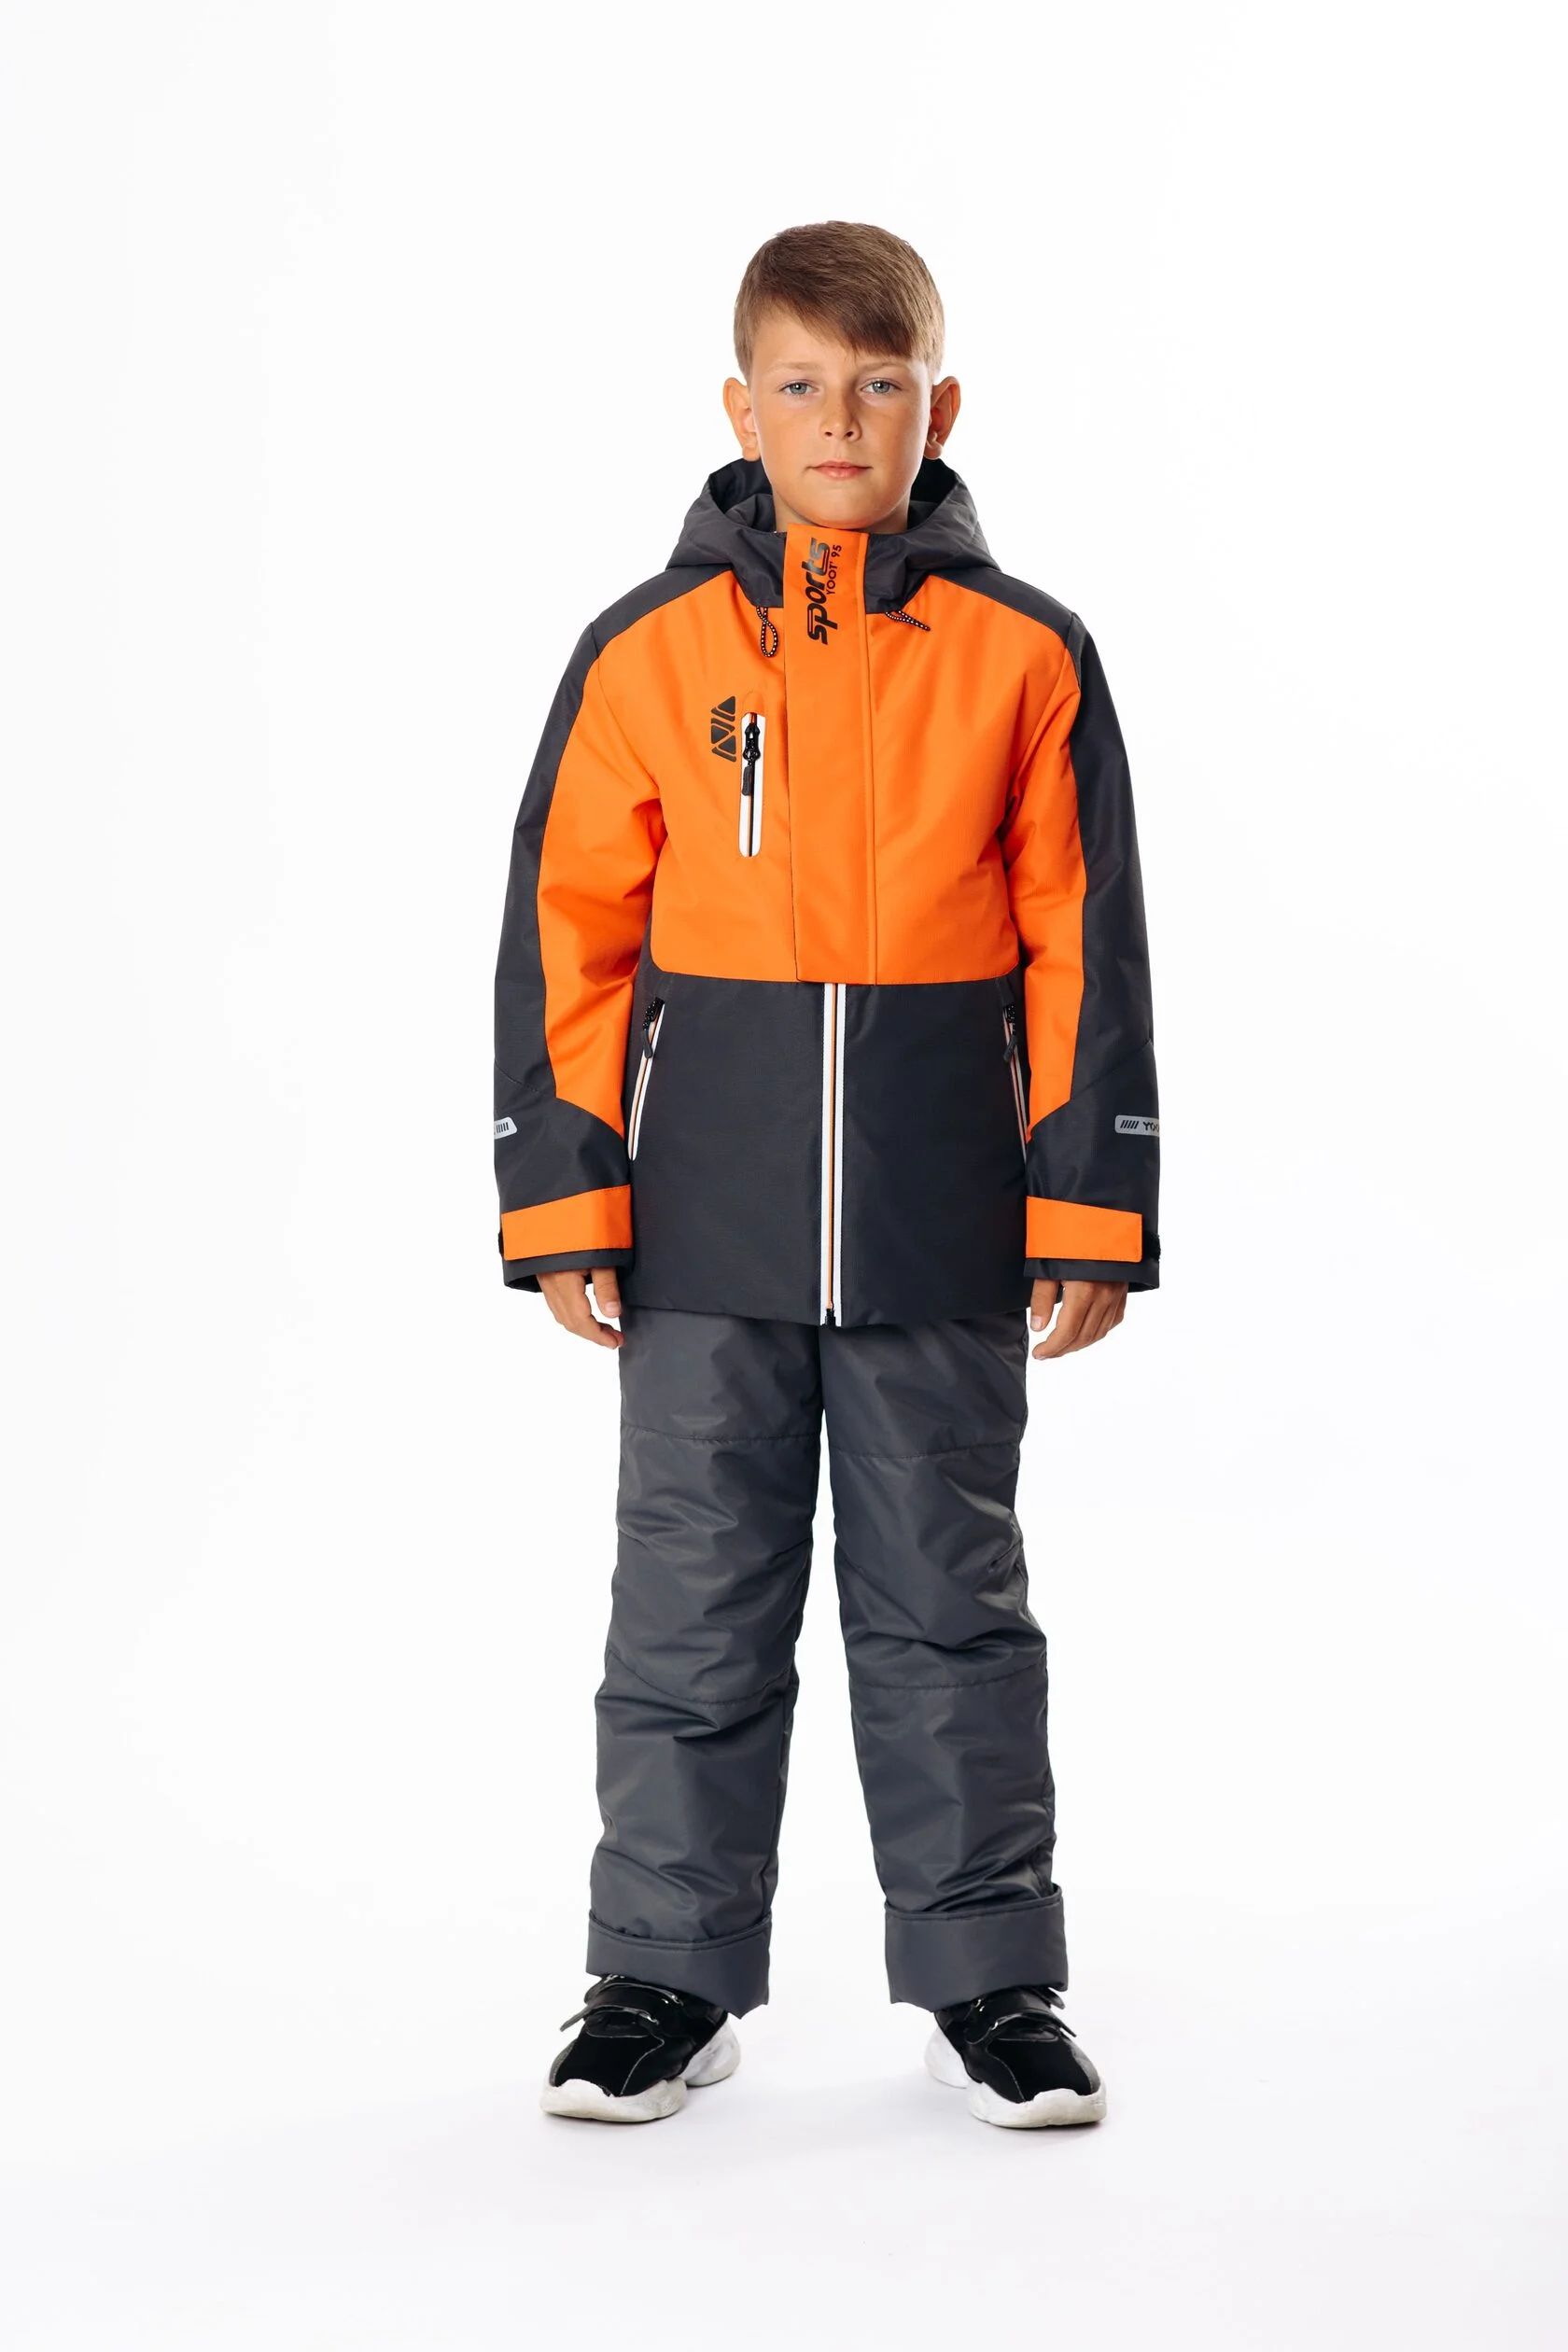 Комплект верхней одежды Yoot 2505 оранжевый, 116